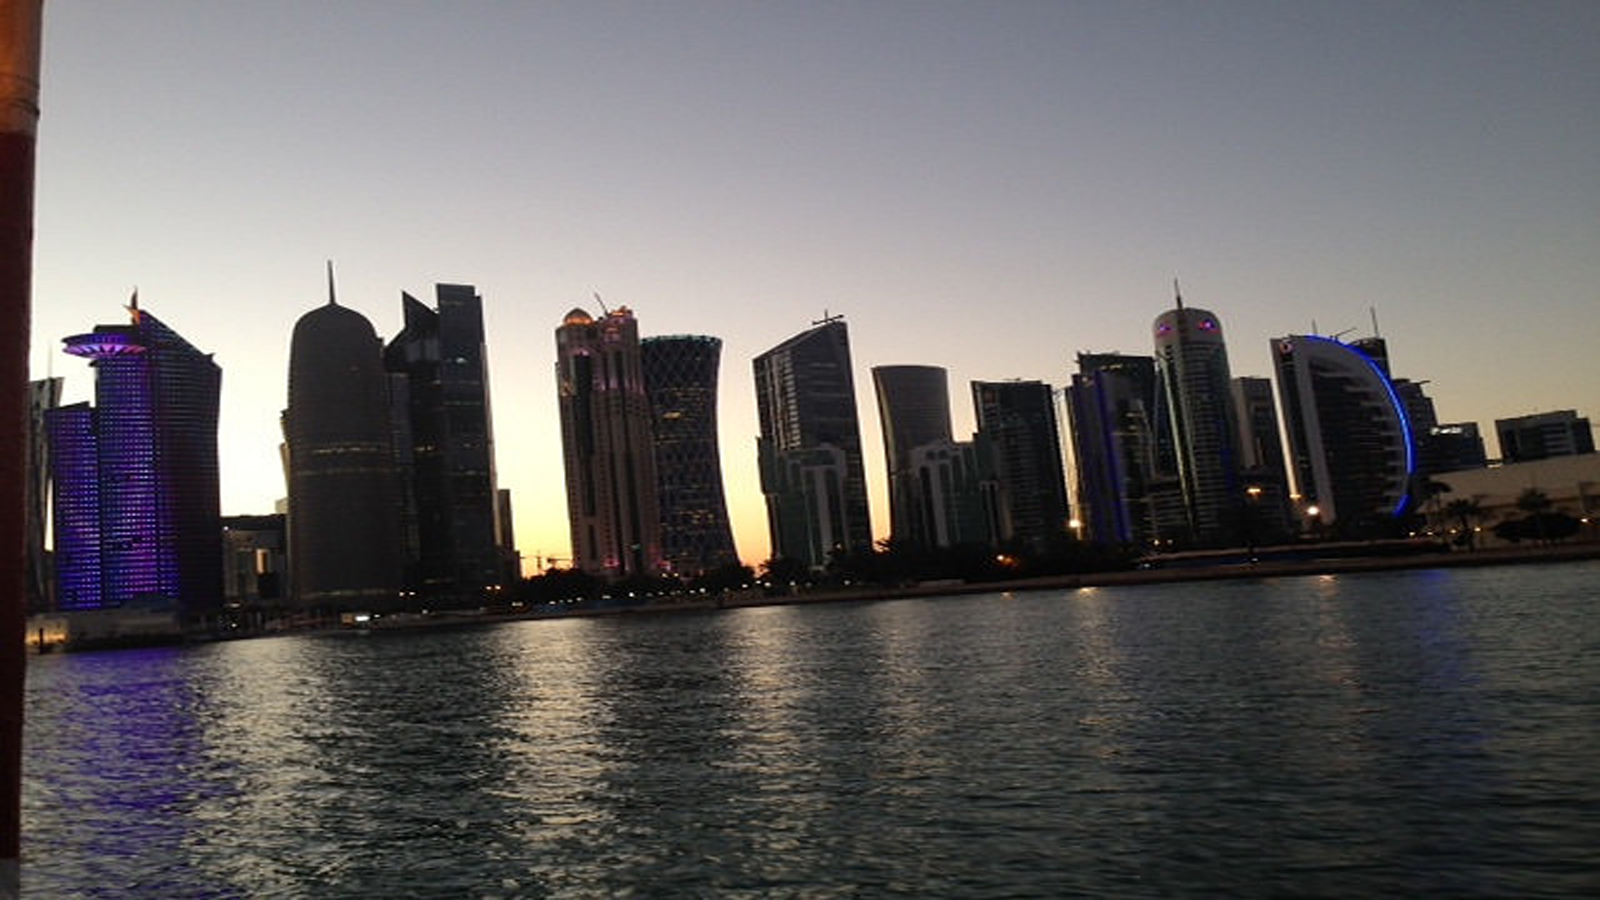 Qatar March 17, 2013